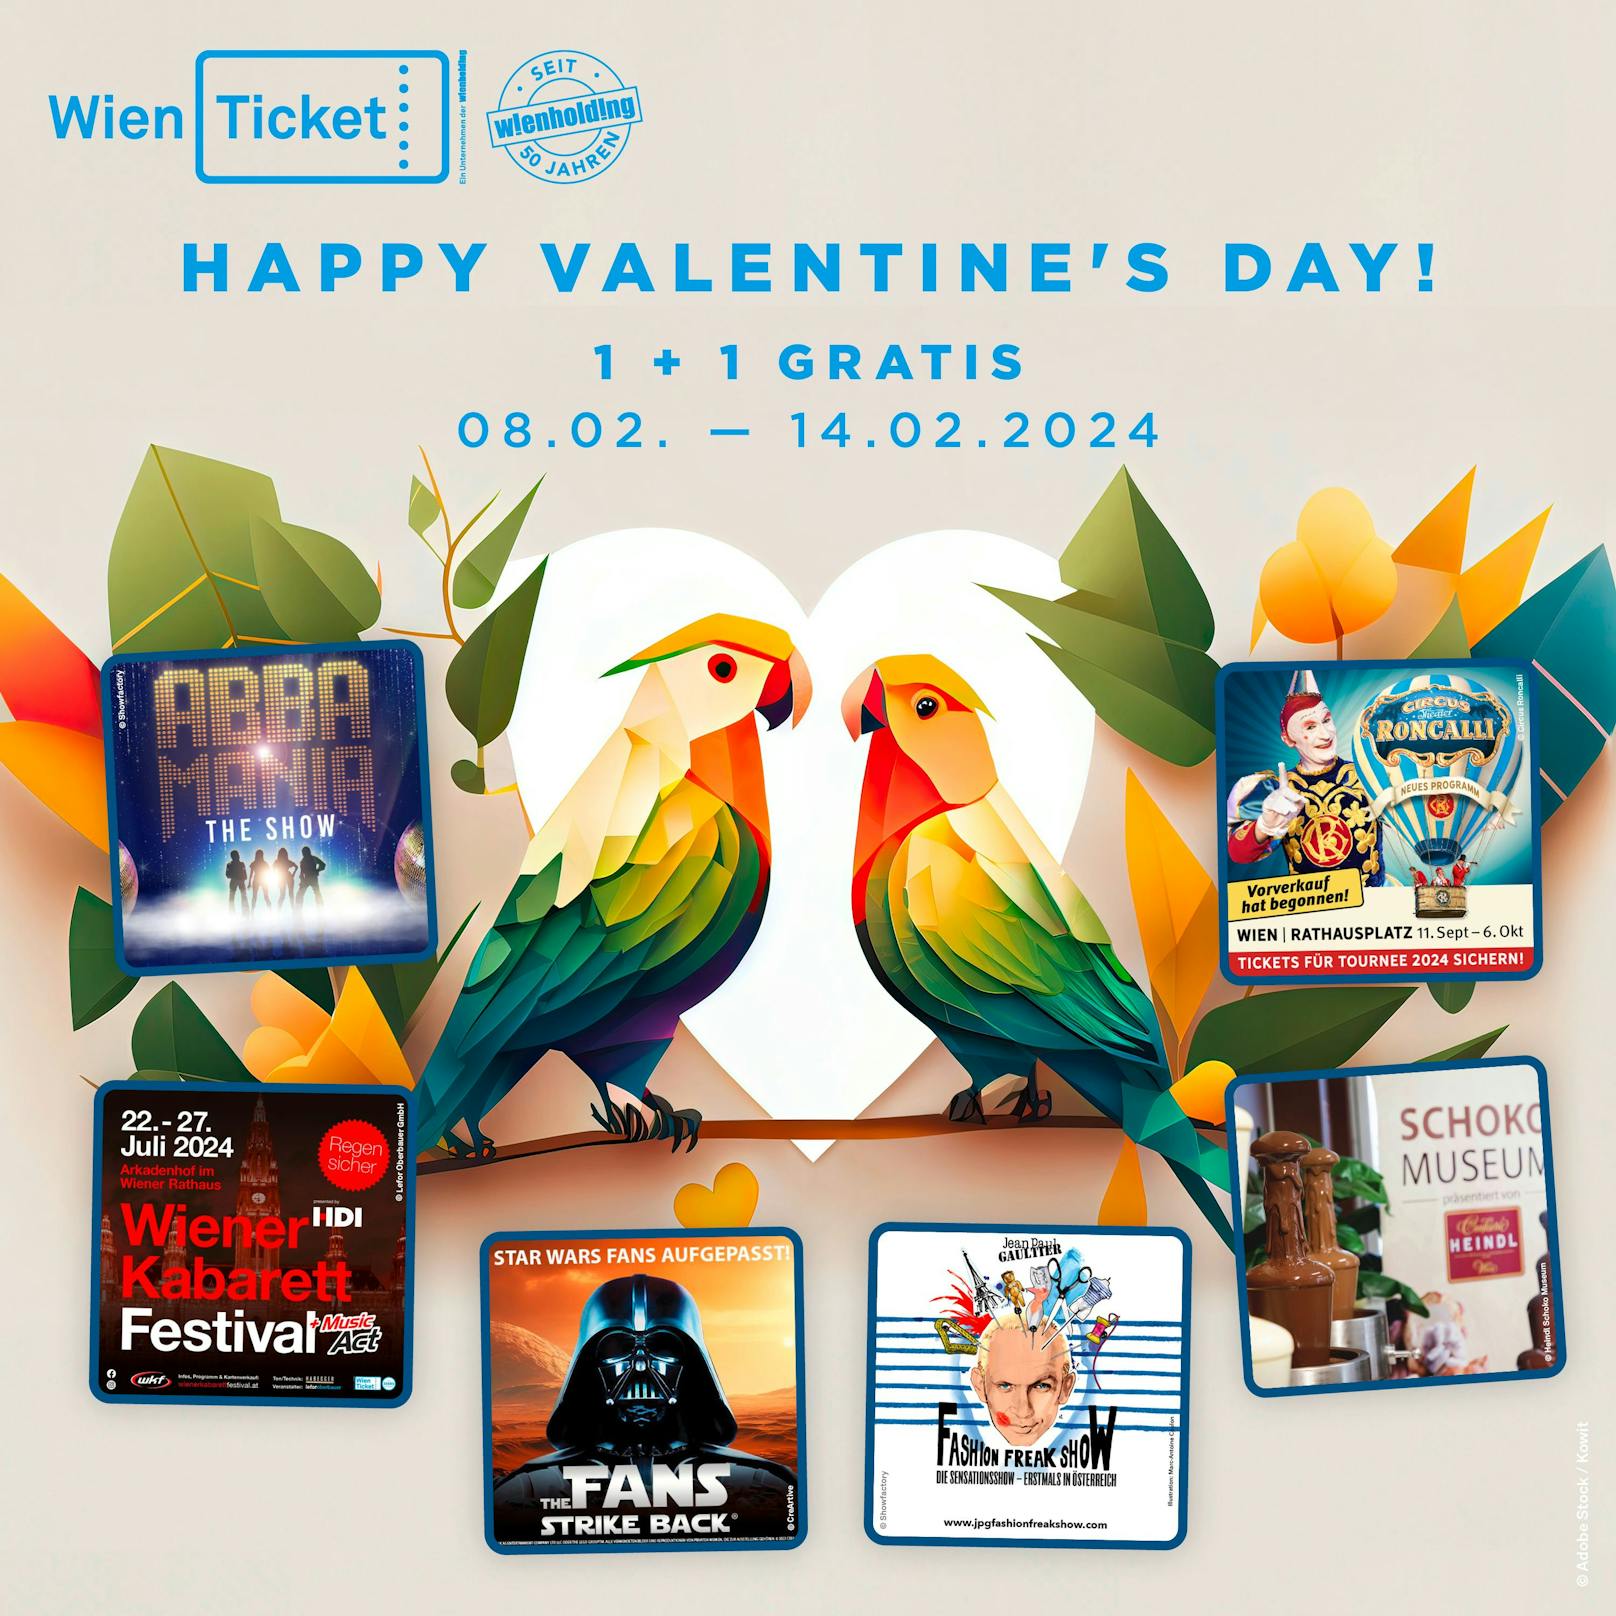 Wien Ticket lädt am Valentinstag mit einer 1+1 Aktion zu zahlreichen Events in Wien.